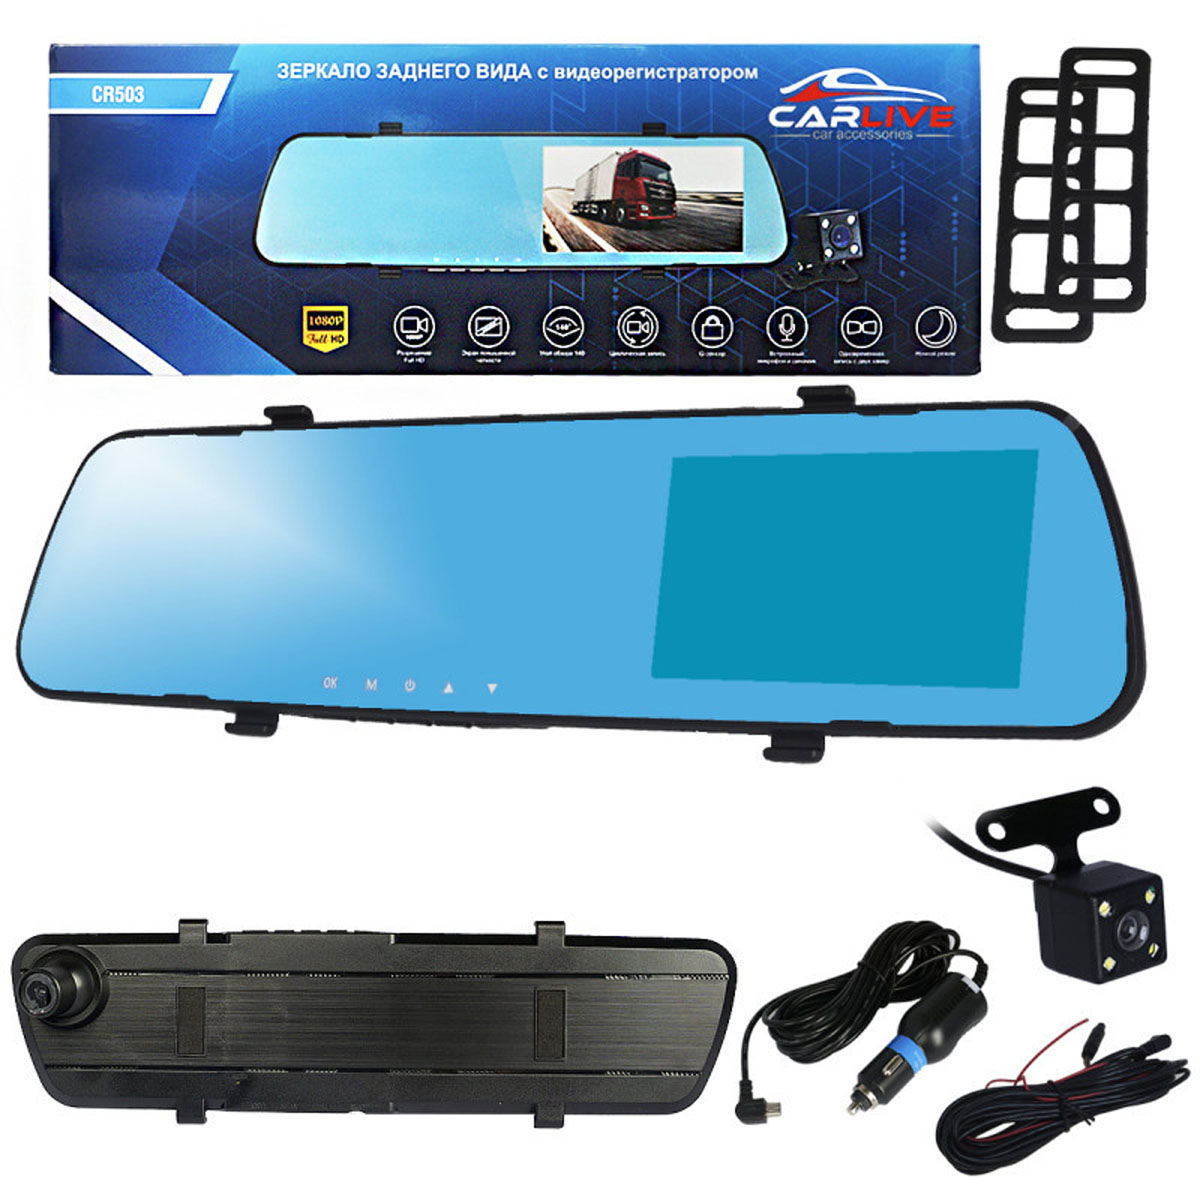 Автомобильное зеркало видеорегистратор CARLIVE CR503, две камеры, цвет черный